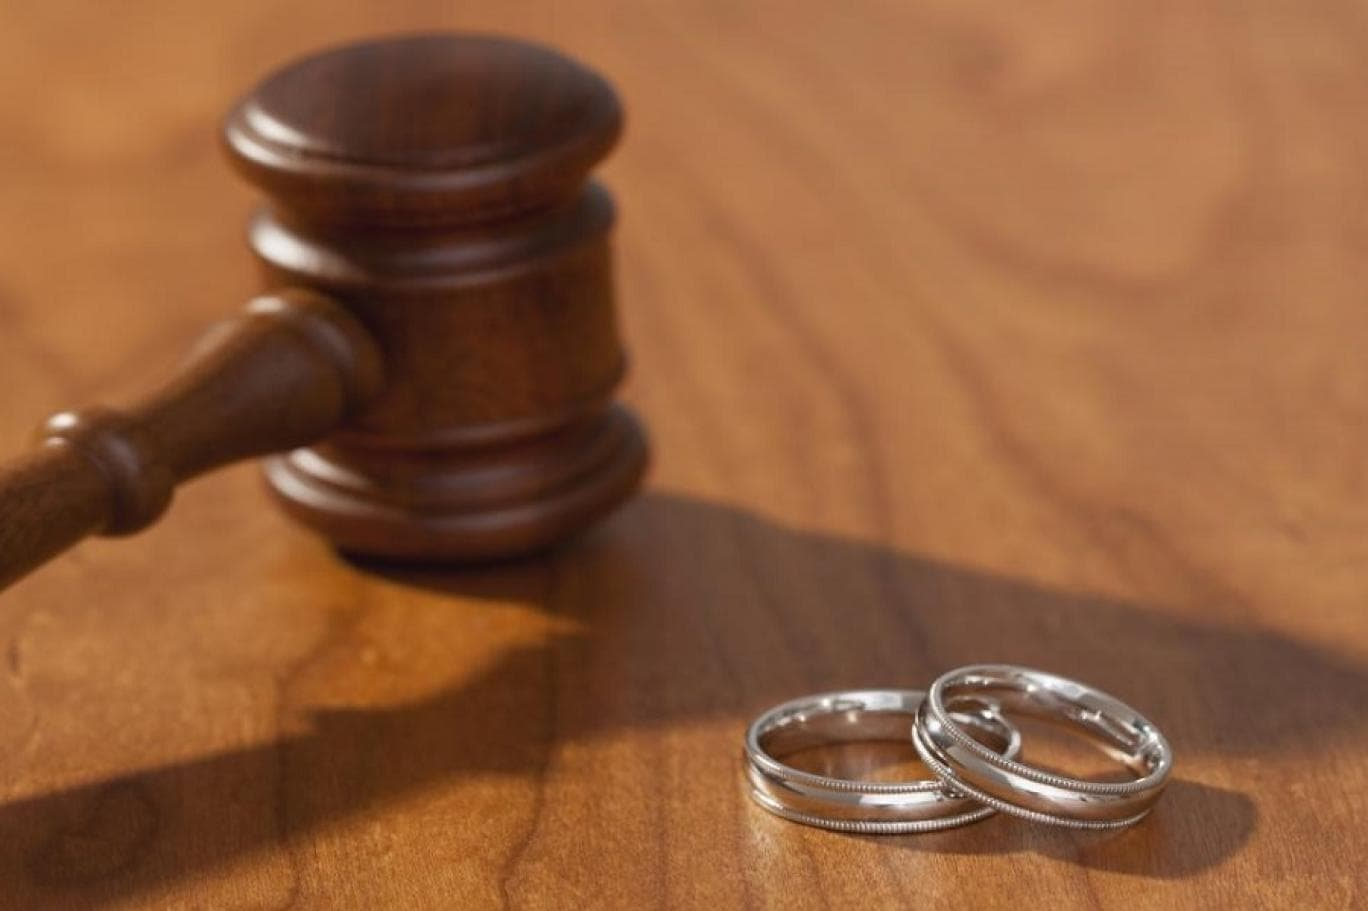 الطلاق في المحكمة الجعفرية الكويت